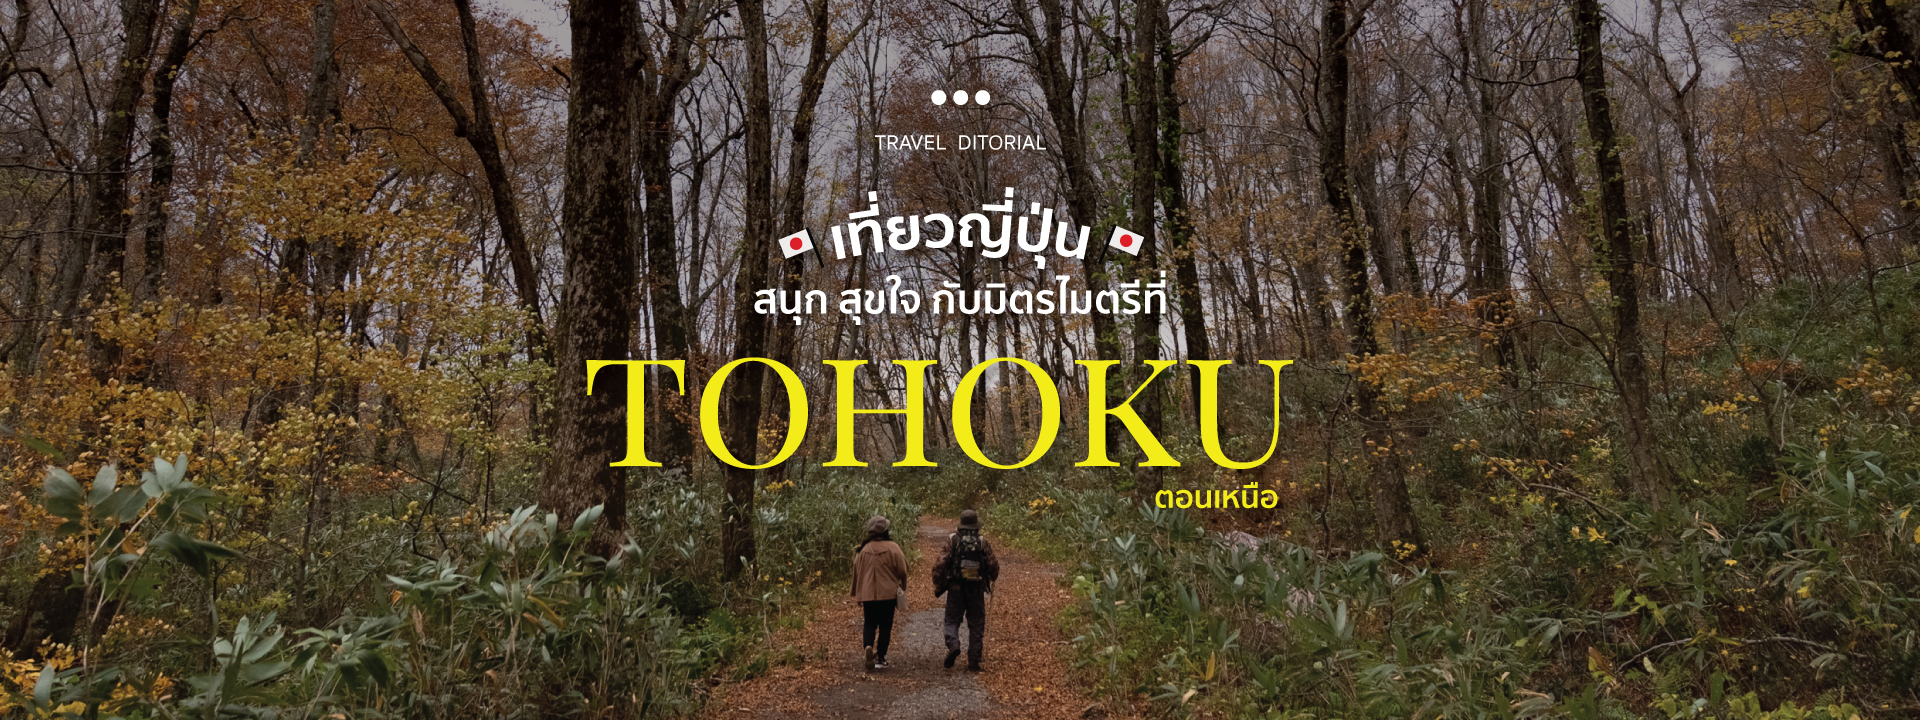 เที่ยวญี่ปุ่น สนุก สุขใจ กับมิตรไมตรีที่ “Tohoku” ตอนเหนือ